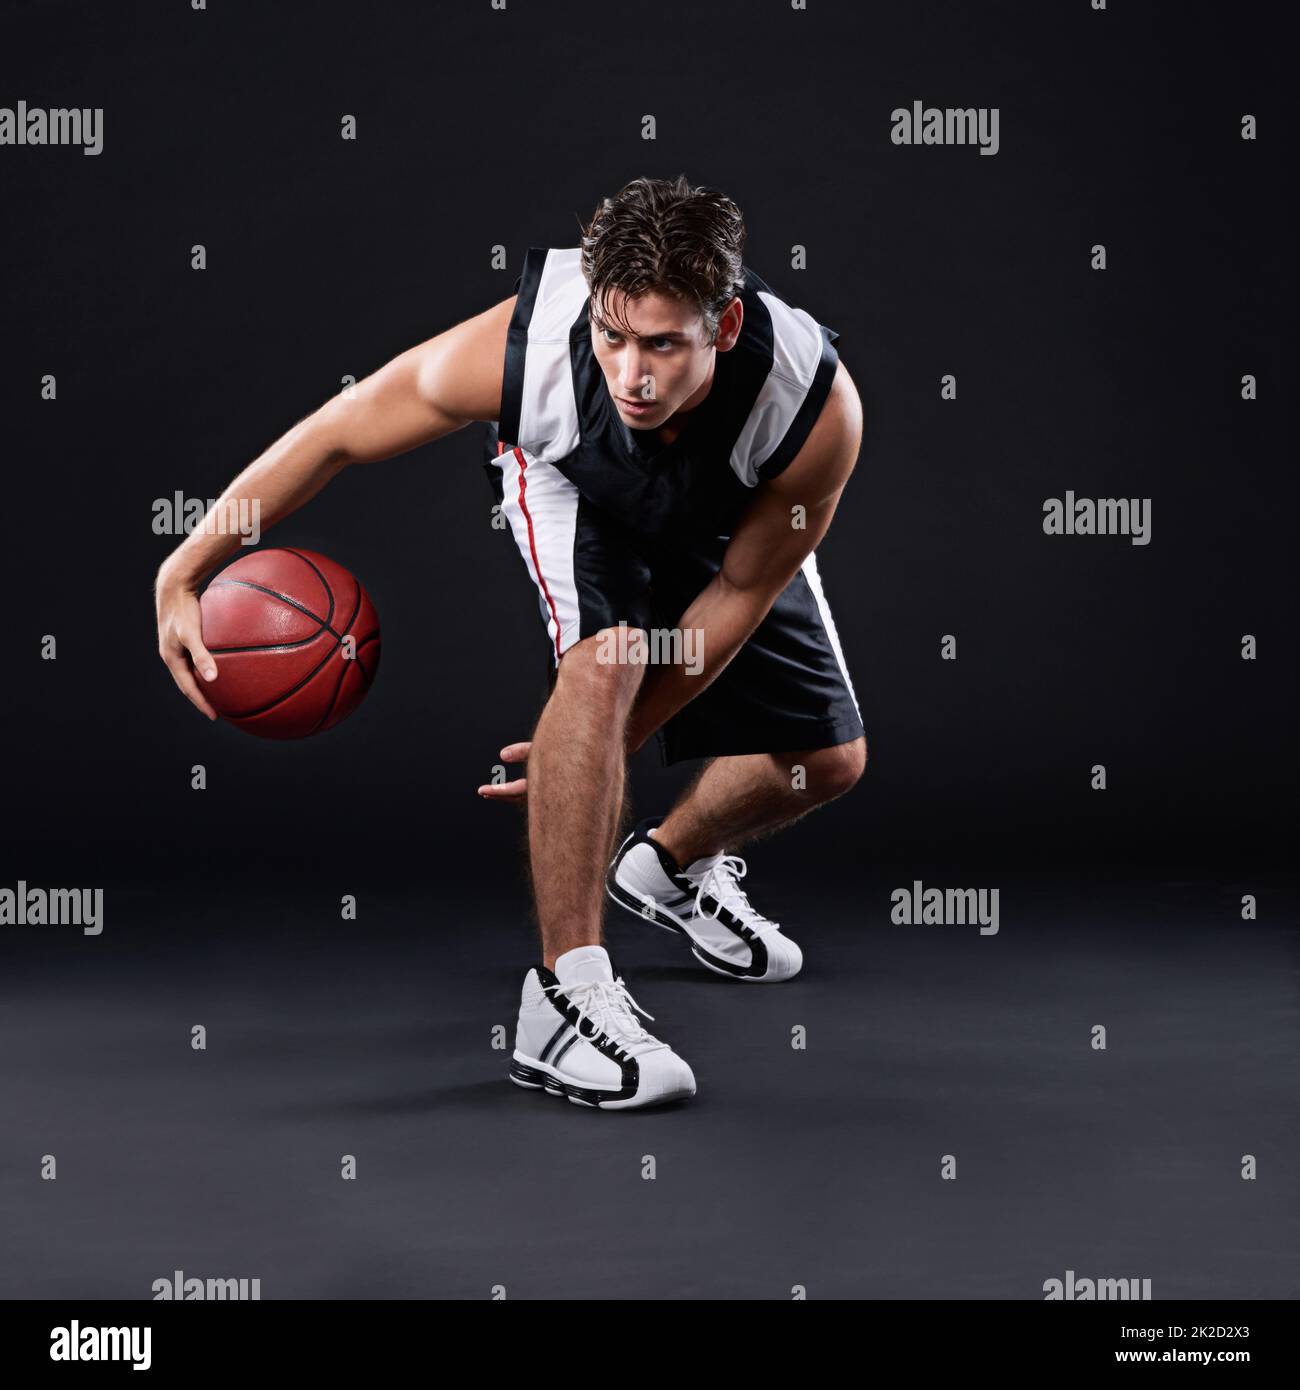 Mit Herz spielen. Ganzkörperaufnahme eines männlichen Basketballspielers in Aktion vor schwarzem Hintergrund. Stockfoto